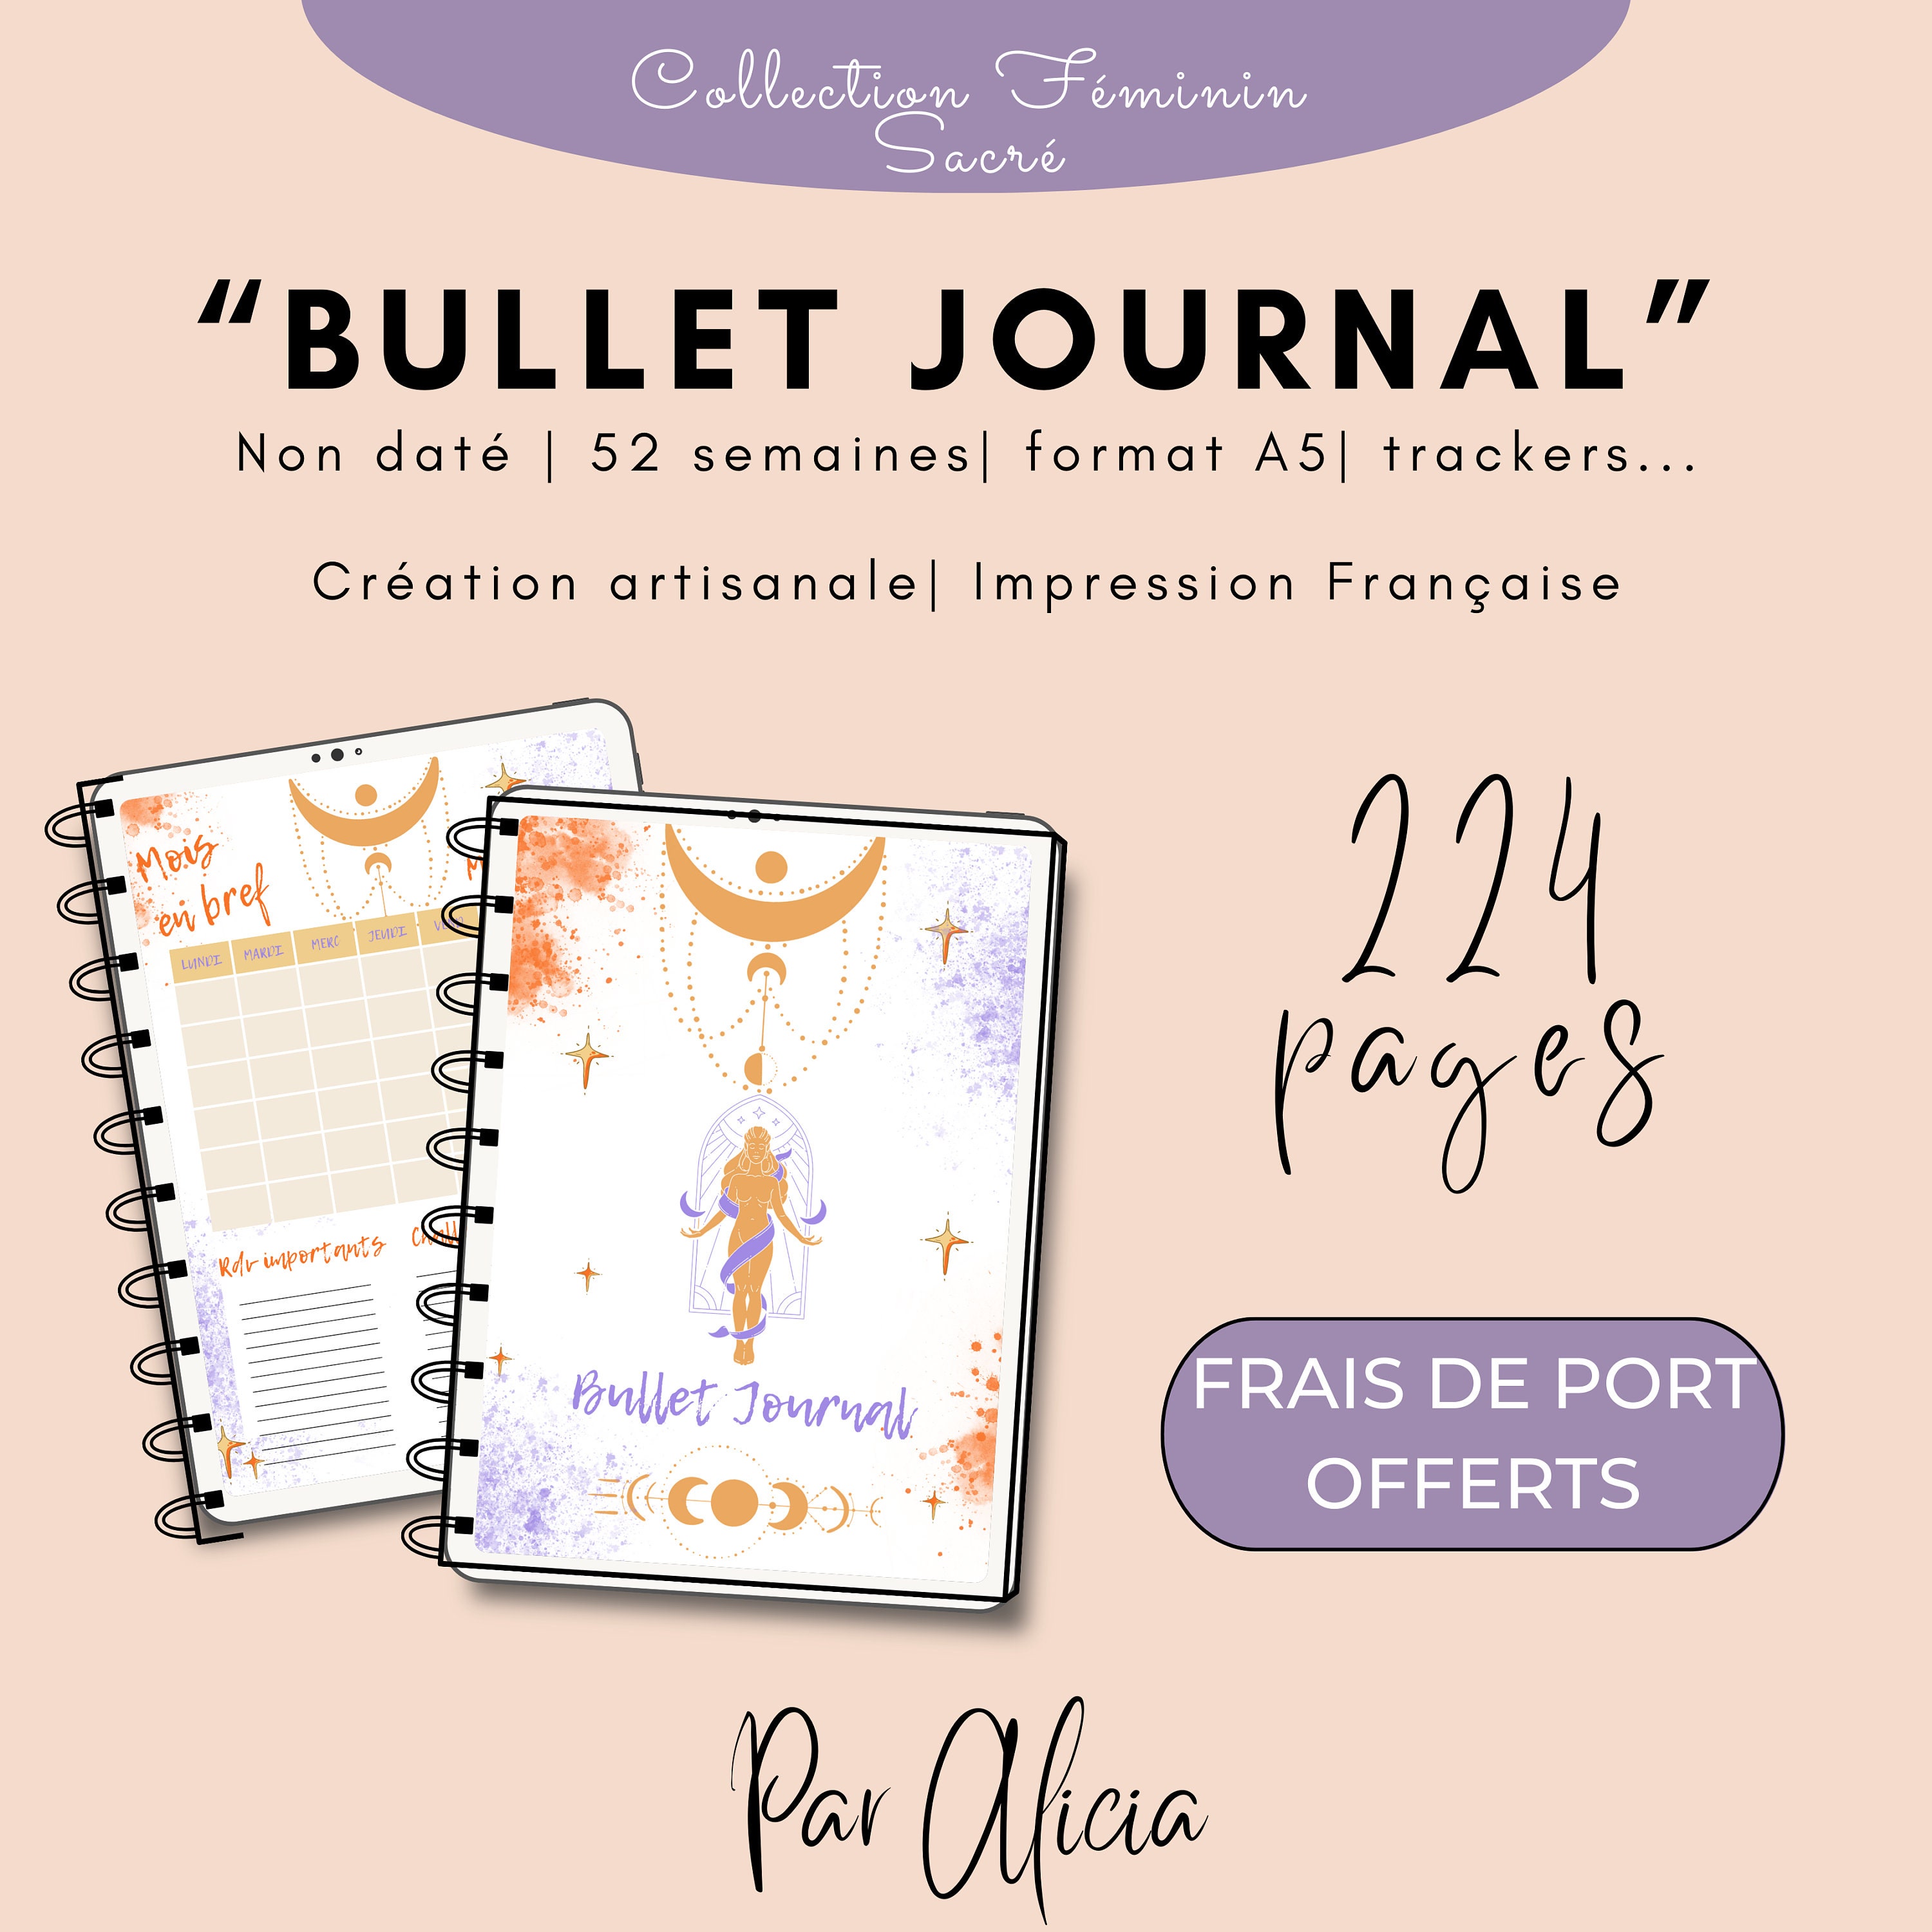 Carnet Bullet Journal tout fait, plus qu'à compléter !